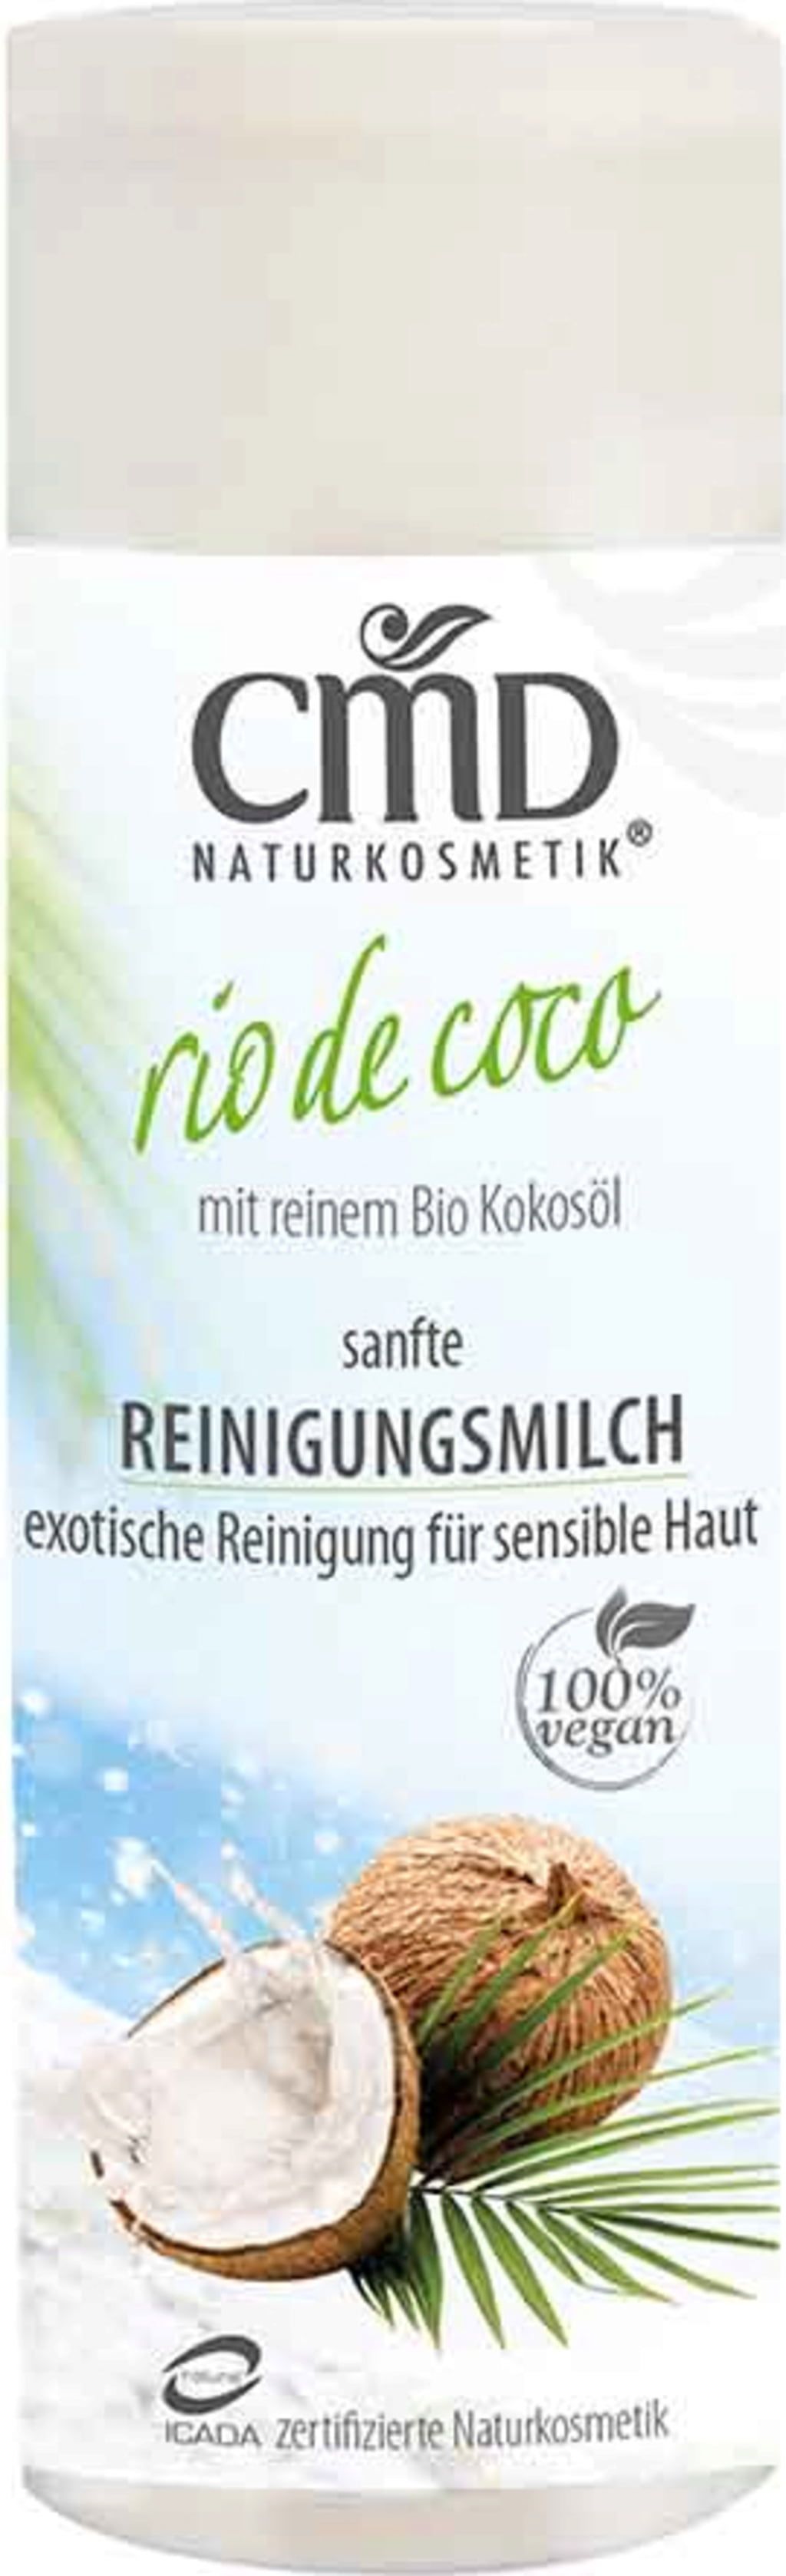 CMD Naturkosmetik Rio de Coco Reinigungsmilch - 200 ml